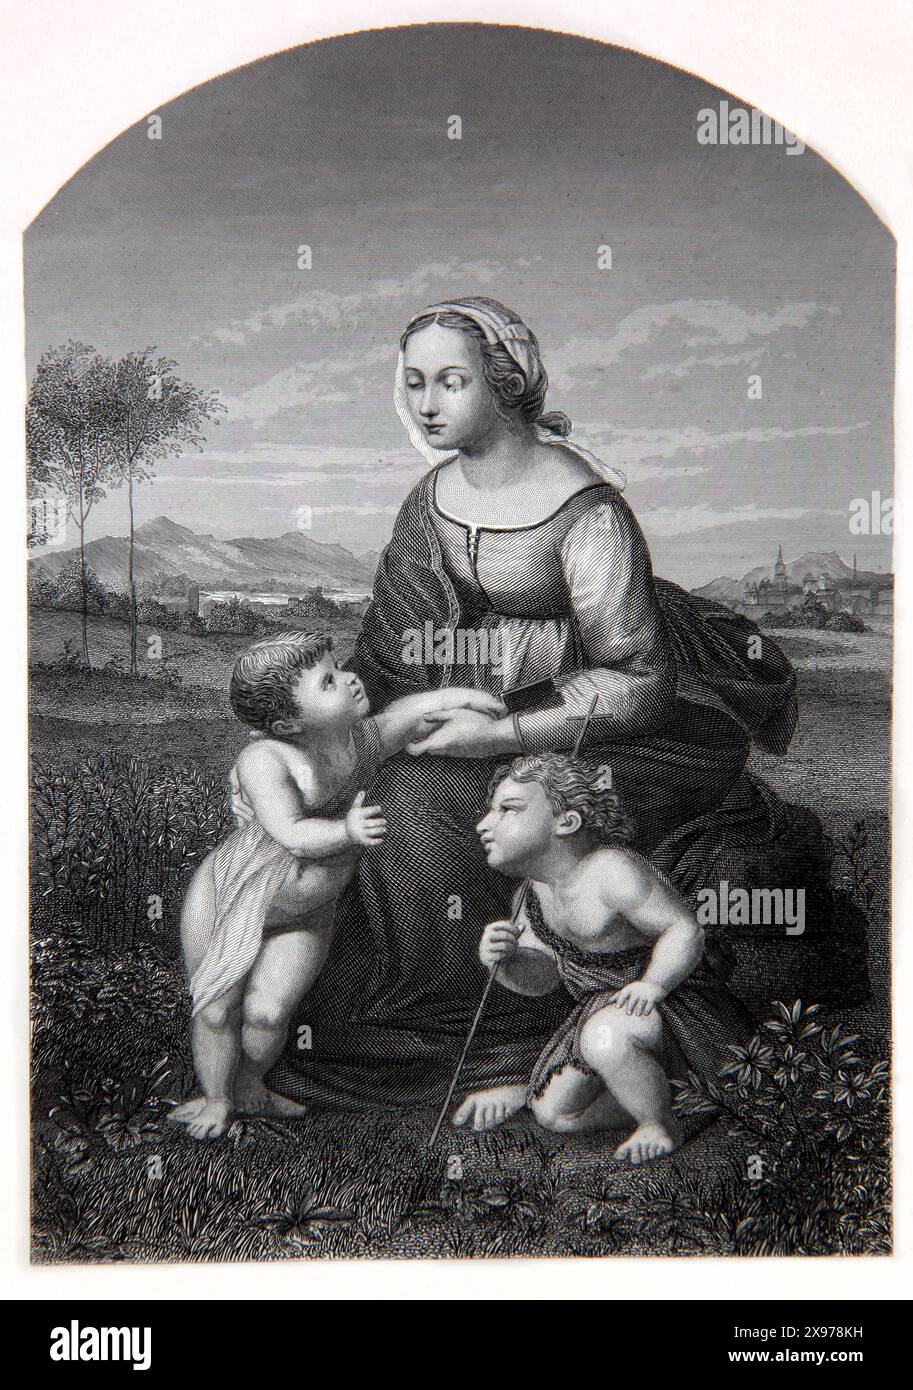 Incisione in legno della Vergine Maria con il bambino Gesù Cristo e San Giovanni Battista dell'antica Bibbia di famiglia illustrata del XIX secolo Foto Stock